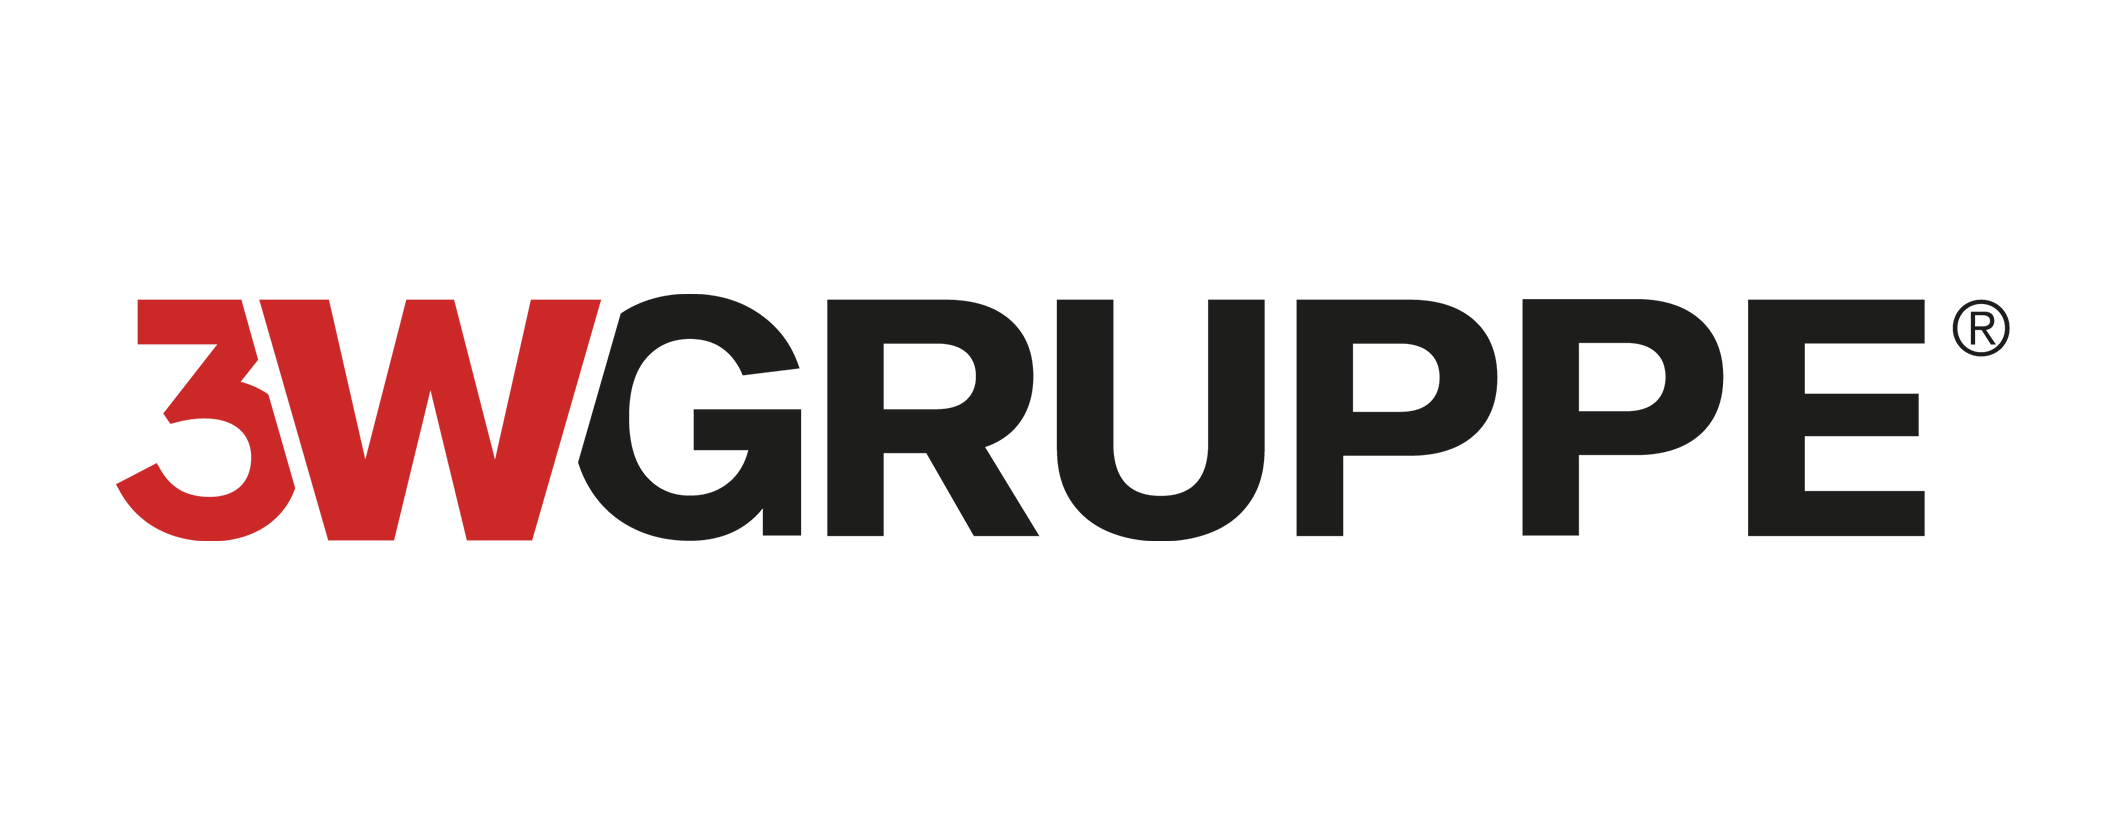 3W GRUPPE ® | Gemeinsam in die digitale Zukunft